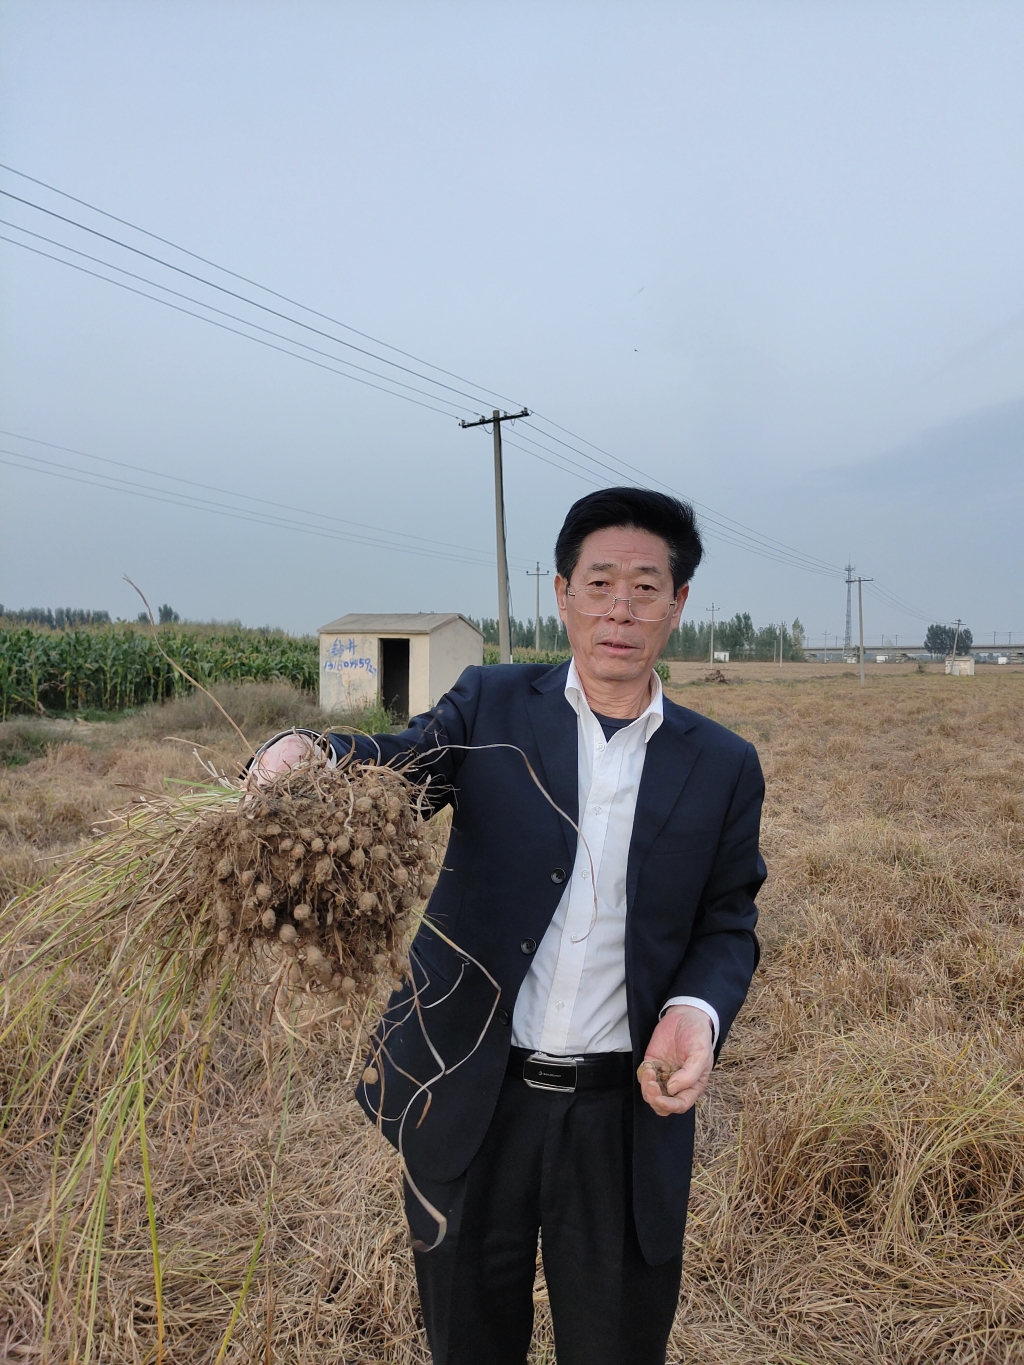 王三秀向記者展示剛摘取的油莎豆